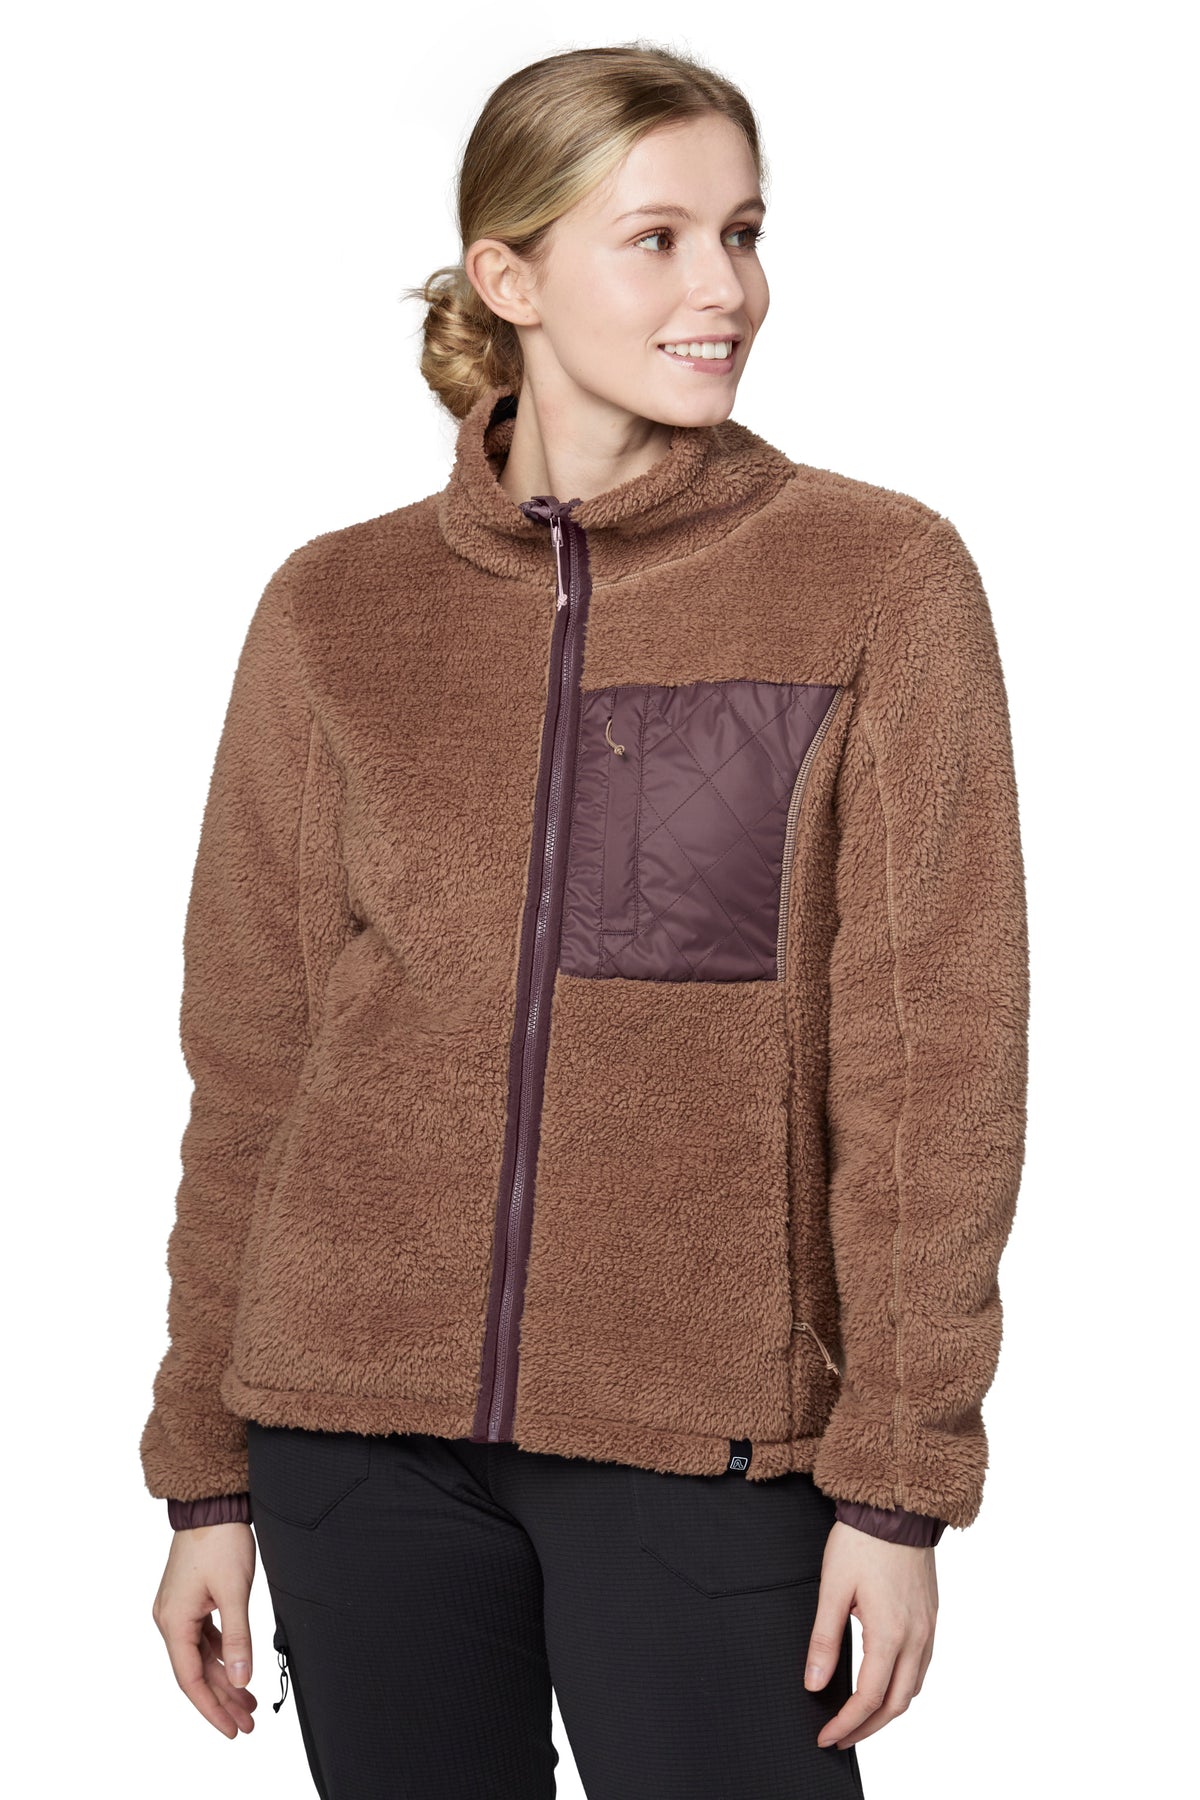 Copper pile fleece jacket Woman